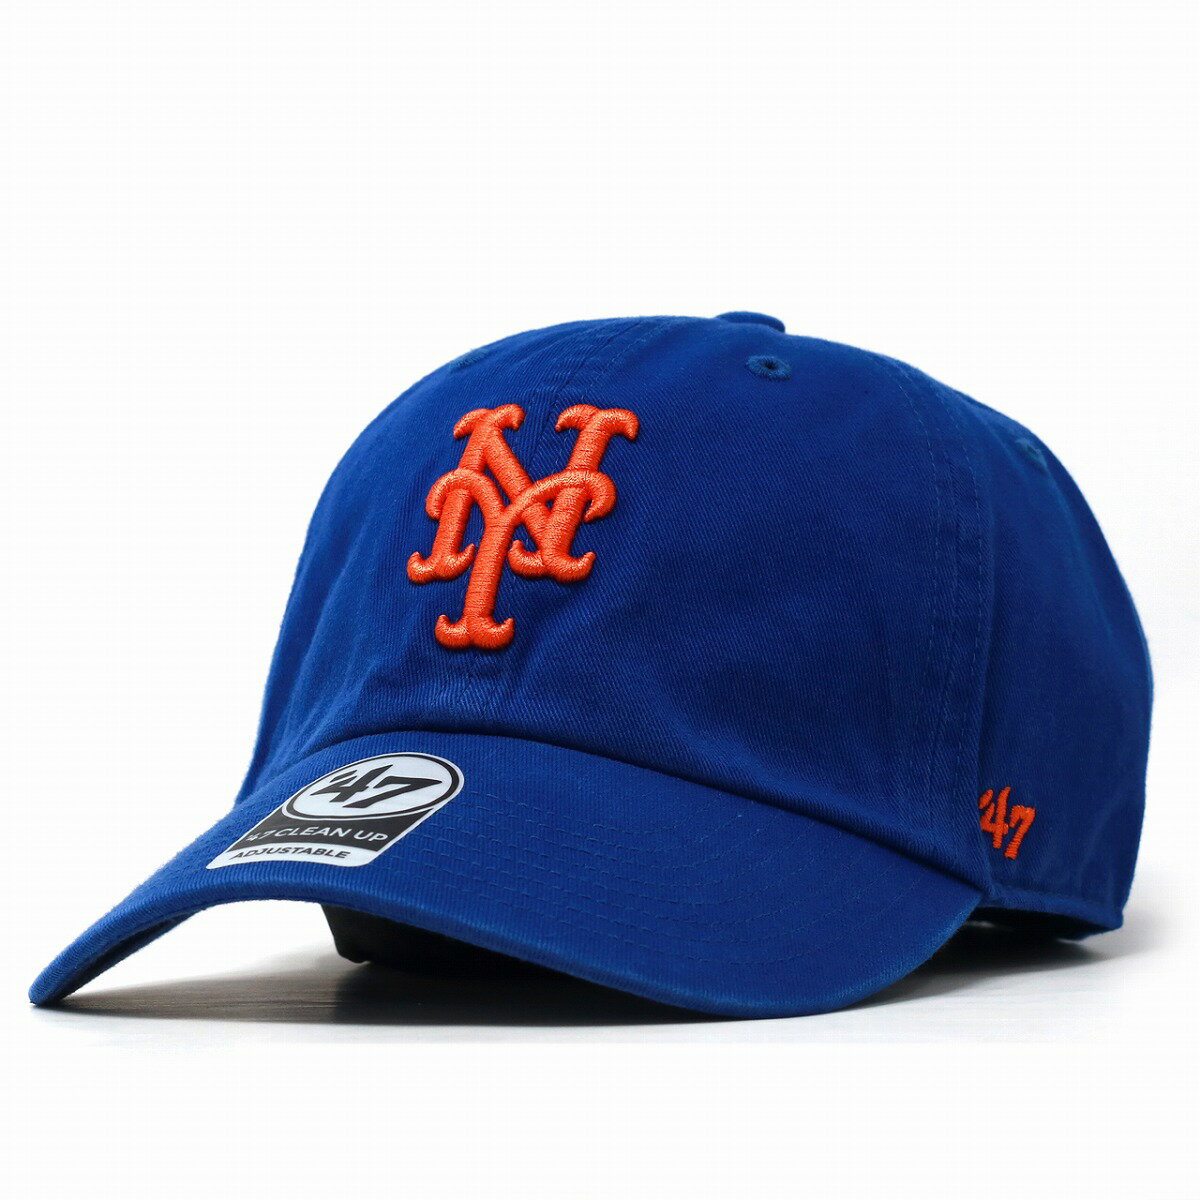 キャップ 47brand 47キャップ クリーンナップ フォーティーセブン ニューヨーク メッツ Mets Home 039 47 CLEAN UP ロイヤル ロゴ フリーサイズ ベースボールキャップ 青 ブルー オレンジロゴ サイズ調整可 10代 20代 30代 40代 誕生日 プレゼント 父の日